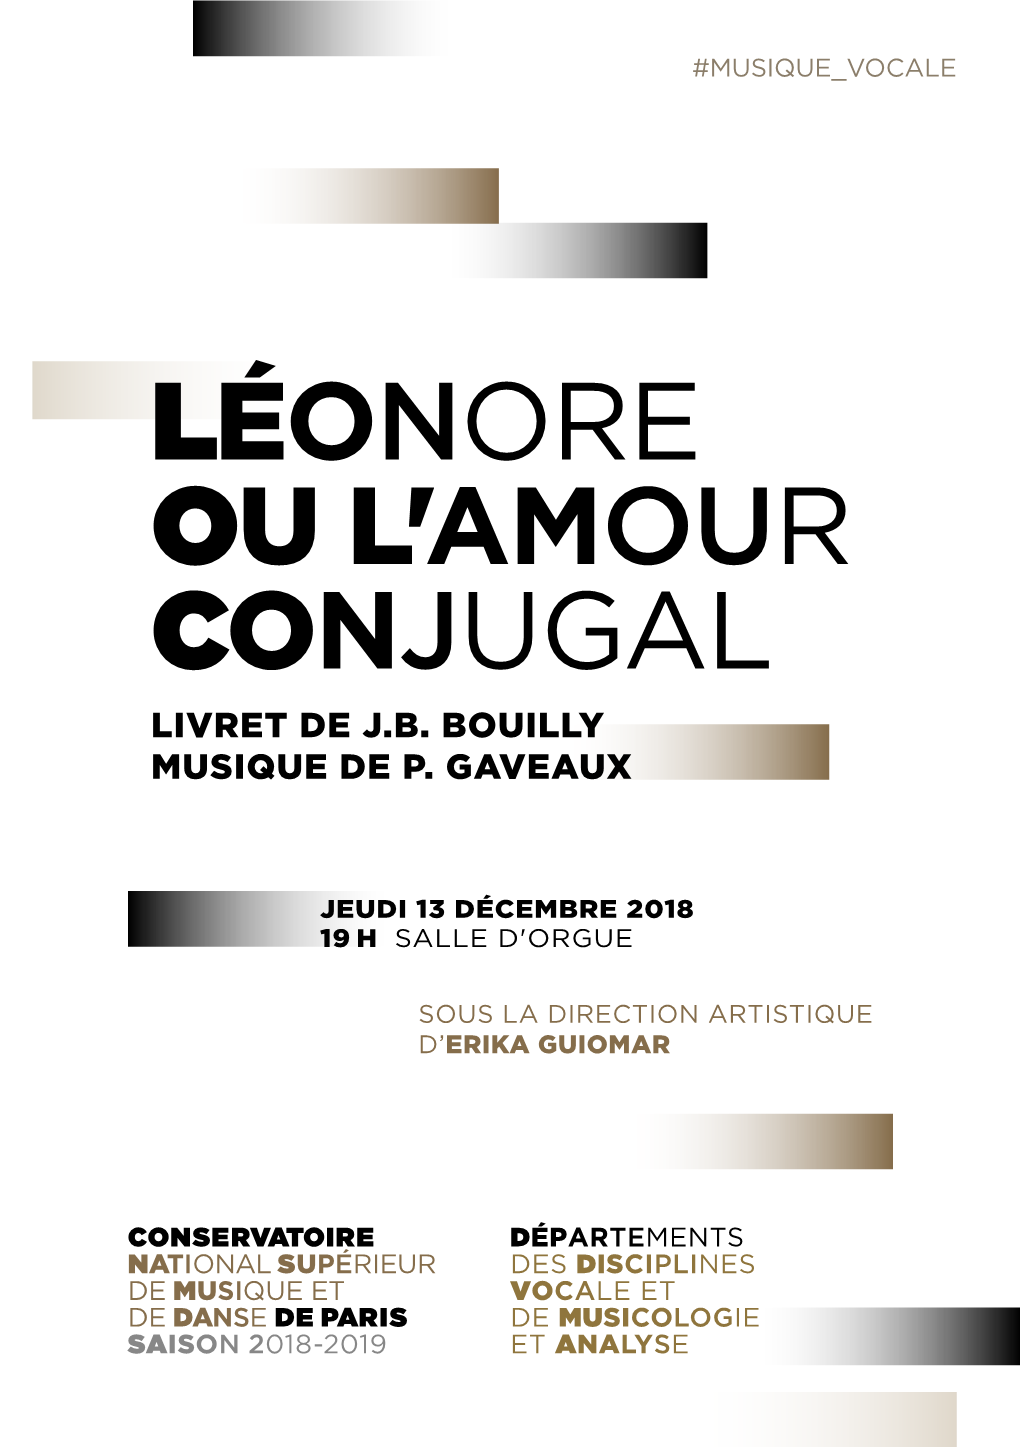 Léonore Ou L'amour Conjugal Livret De J.B